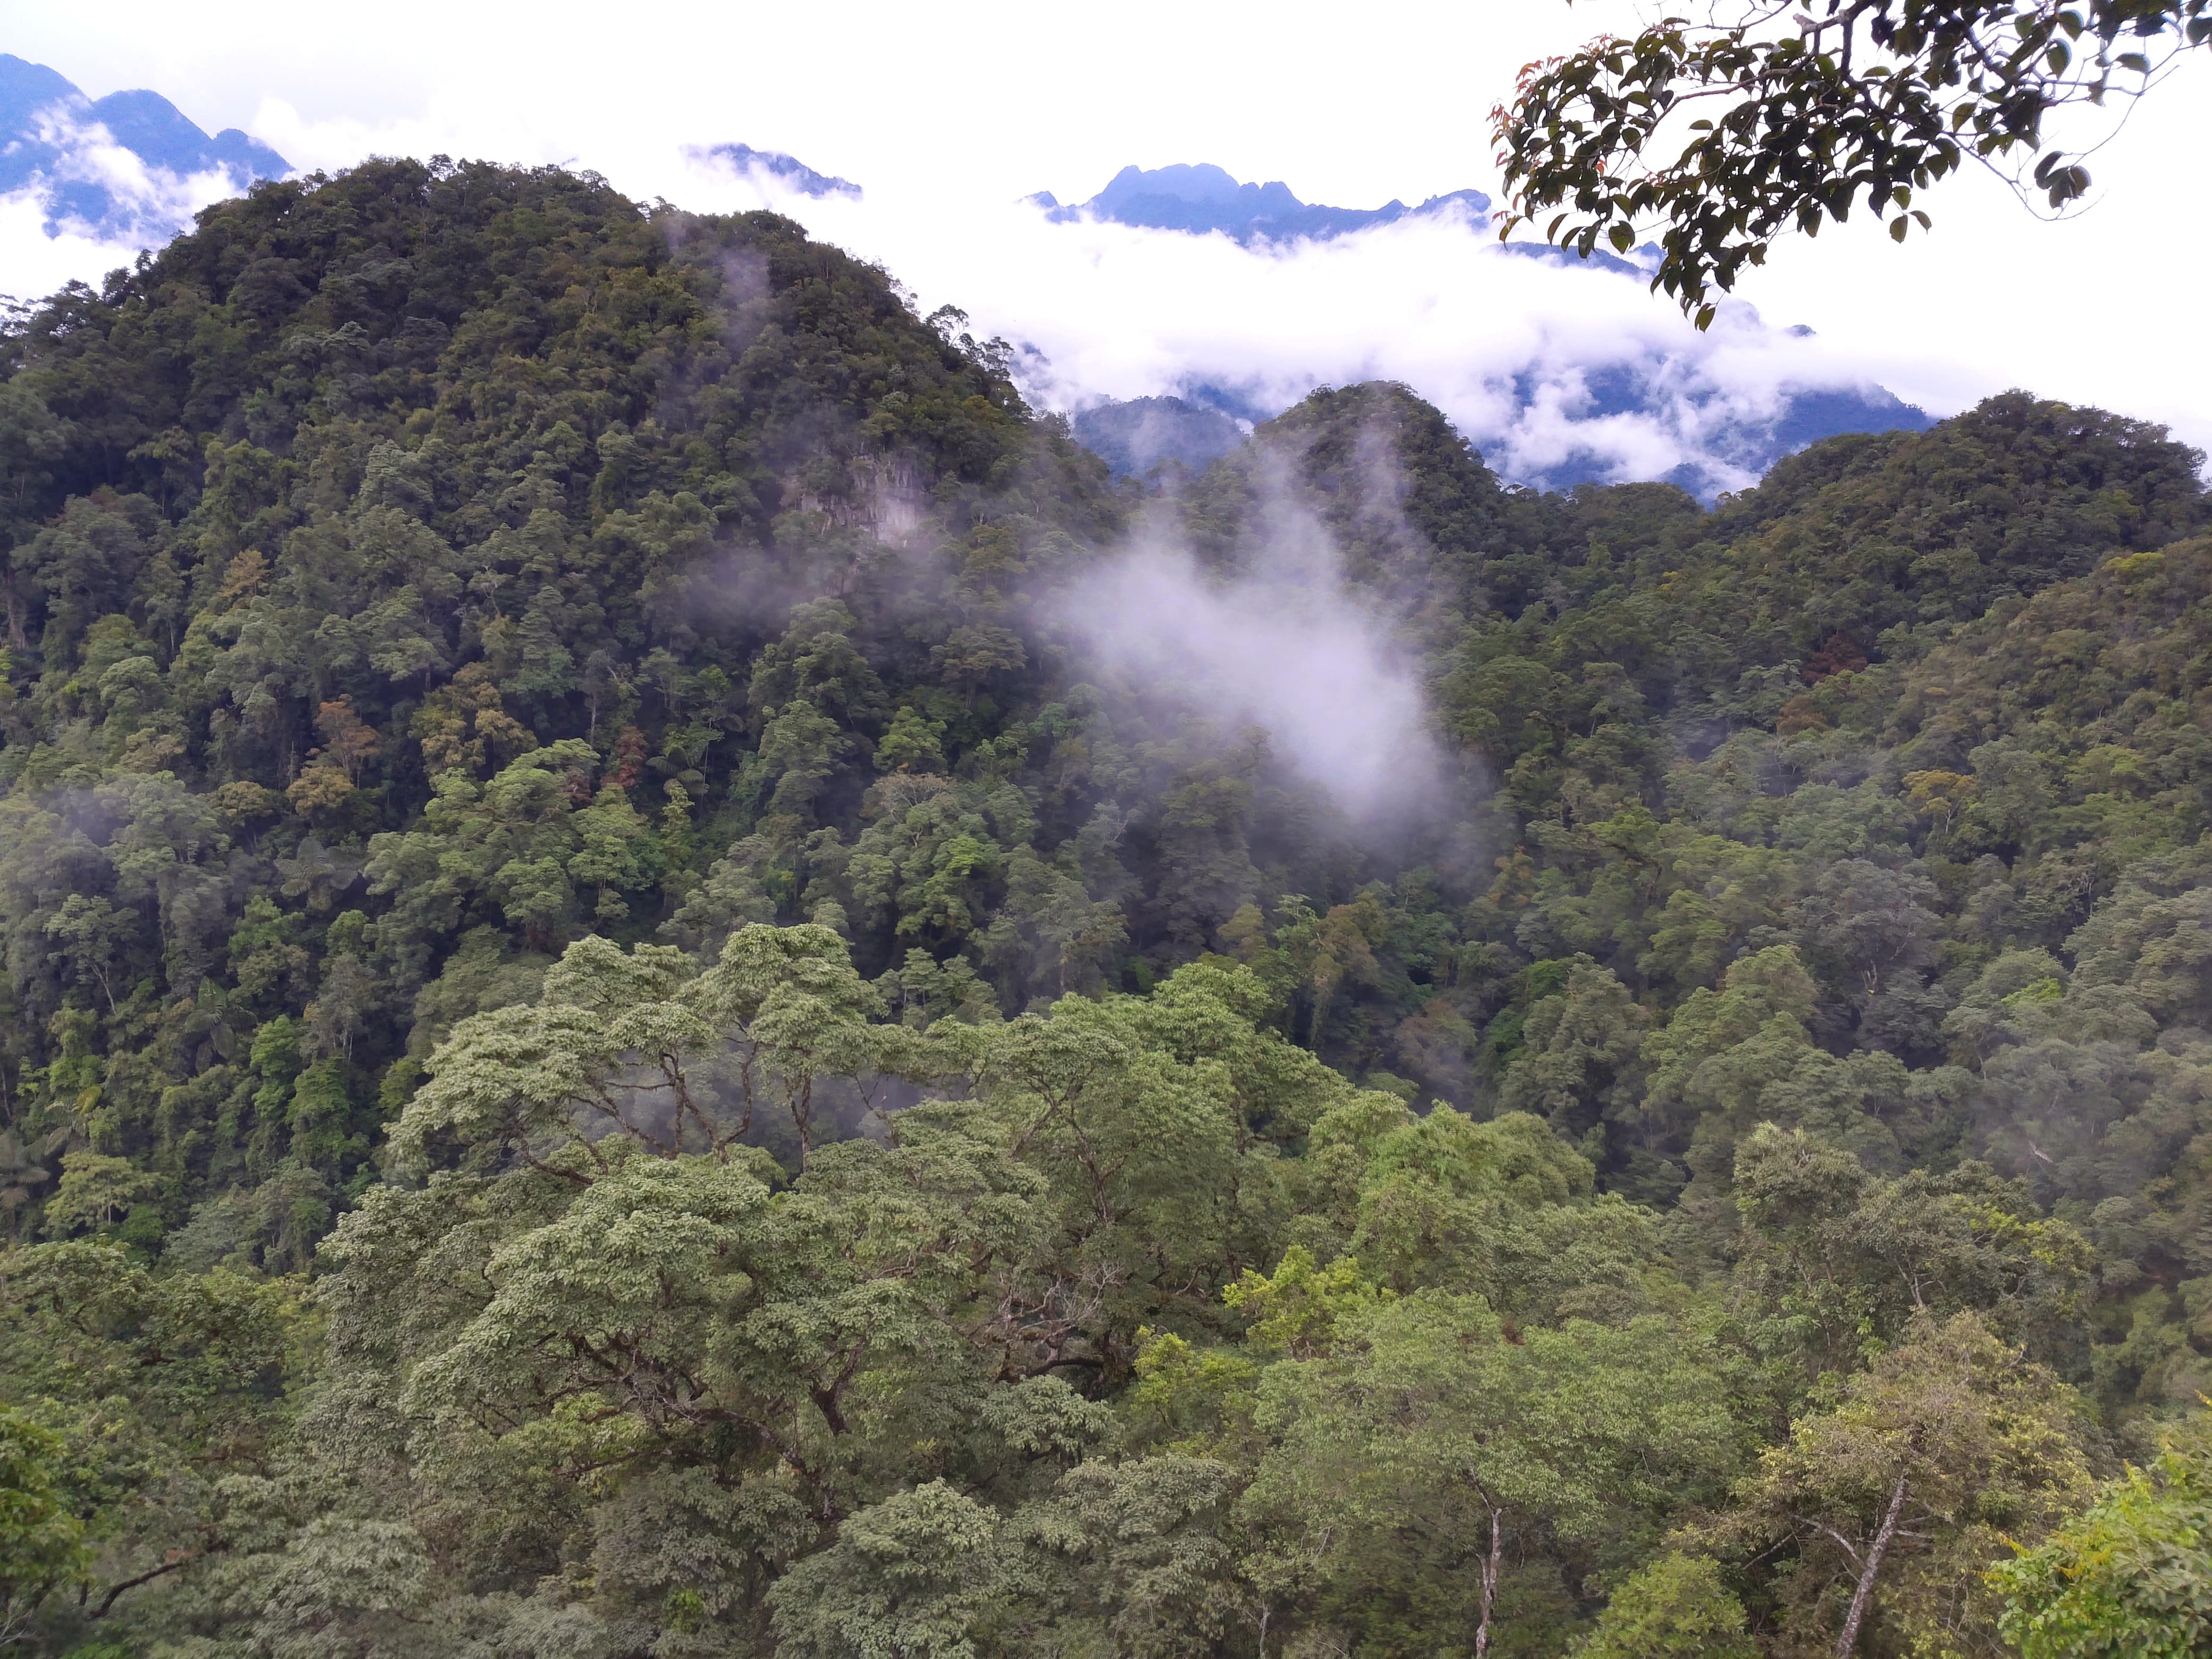 Giải pháp bảo vệ thiên nhiên, đa dạng sinh học và phát triển rừng bên vững trên địa bàn tỉnh Yên Bái